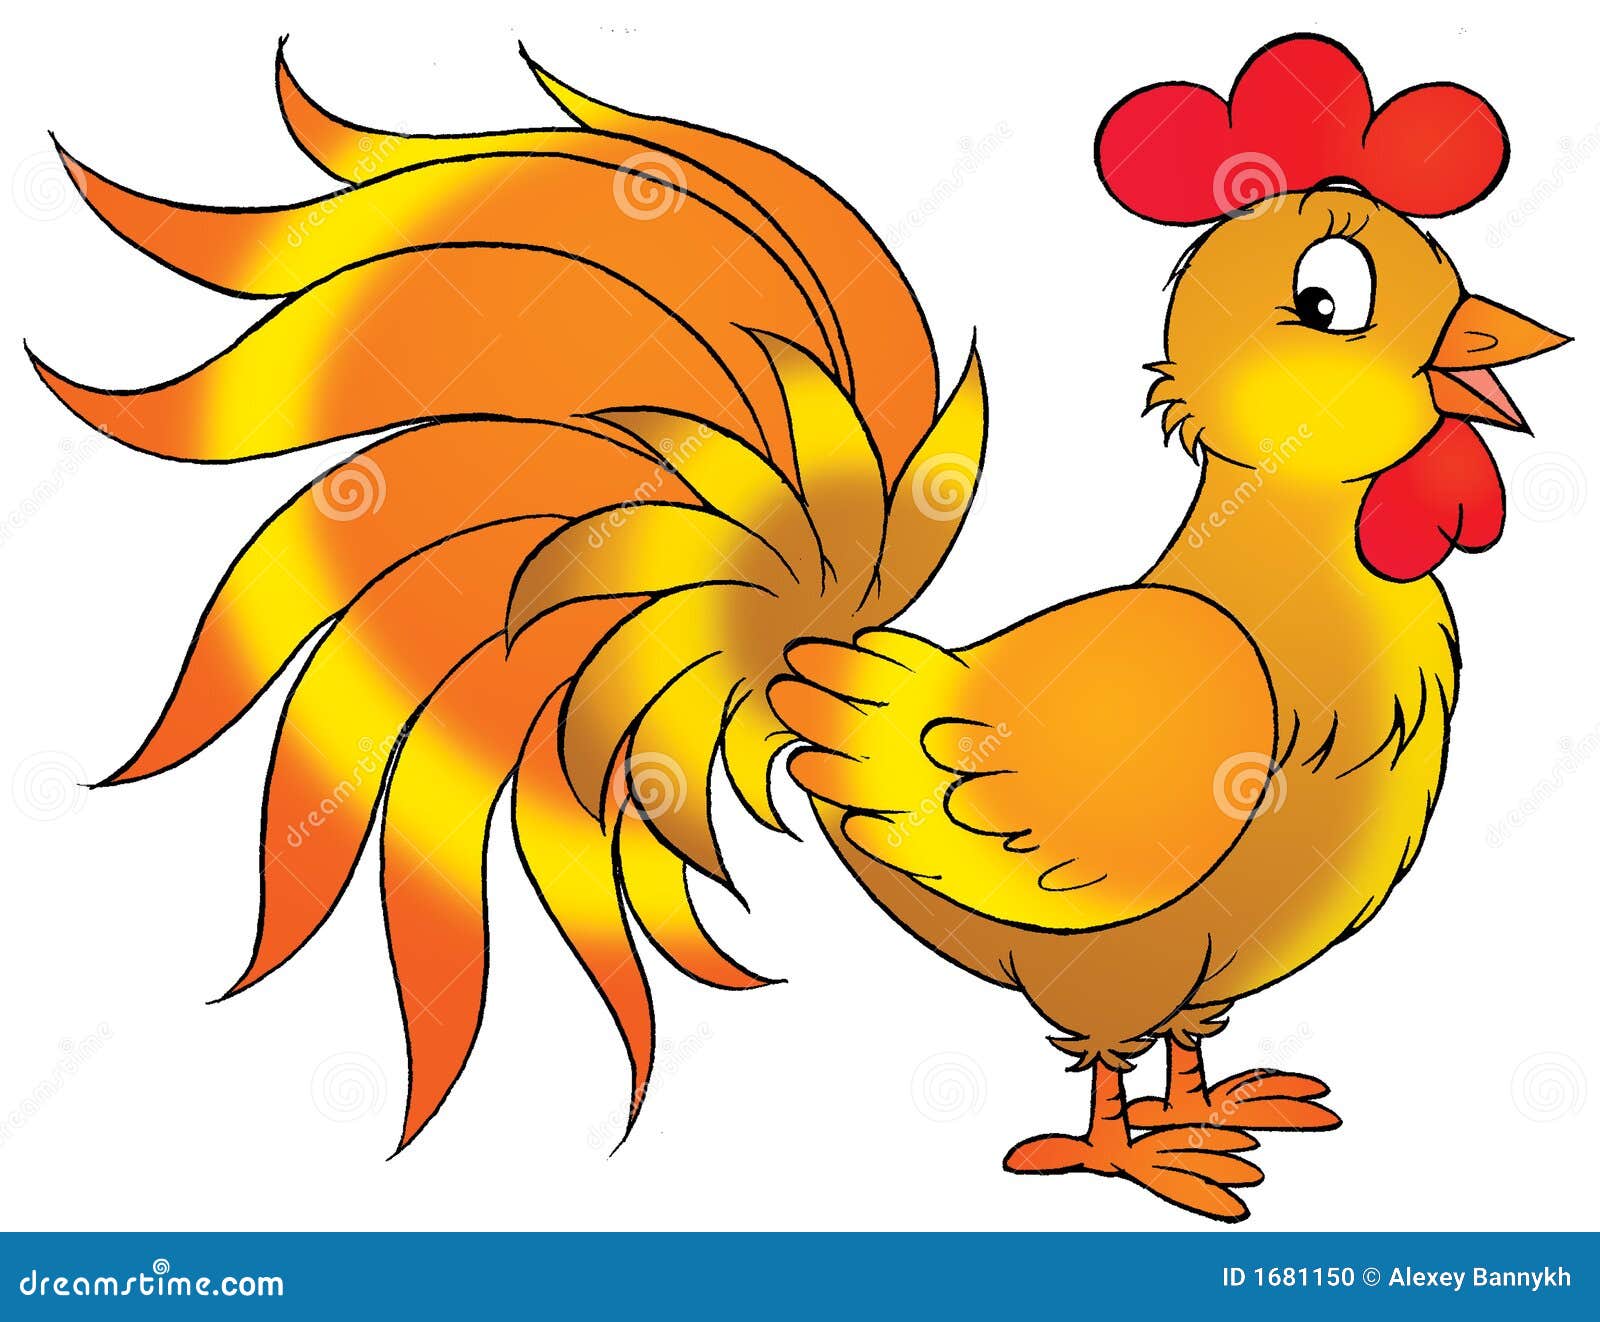 rooster-cartoon-illustration-cartoondealer-1681150